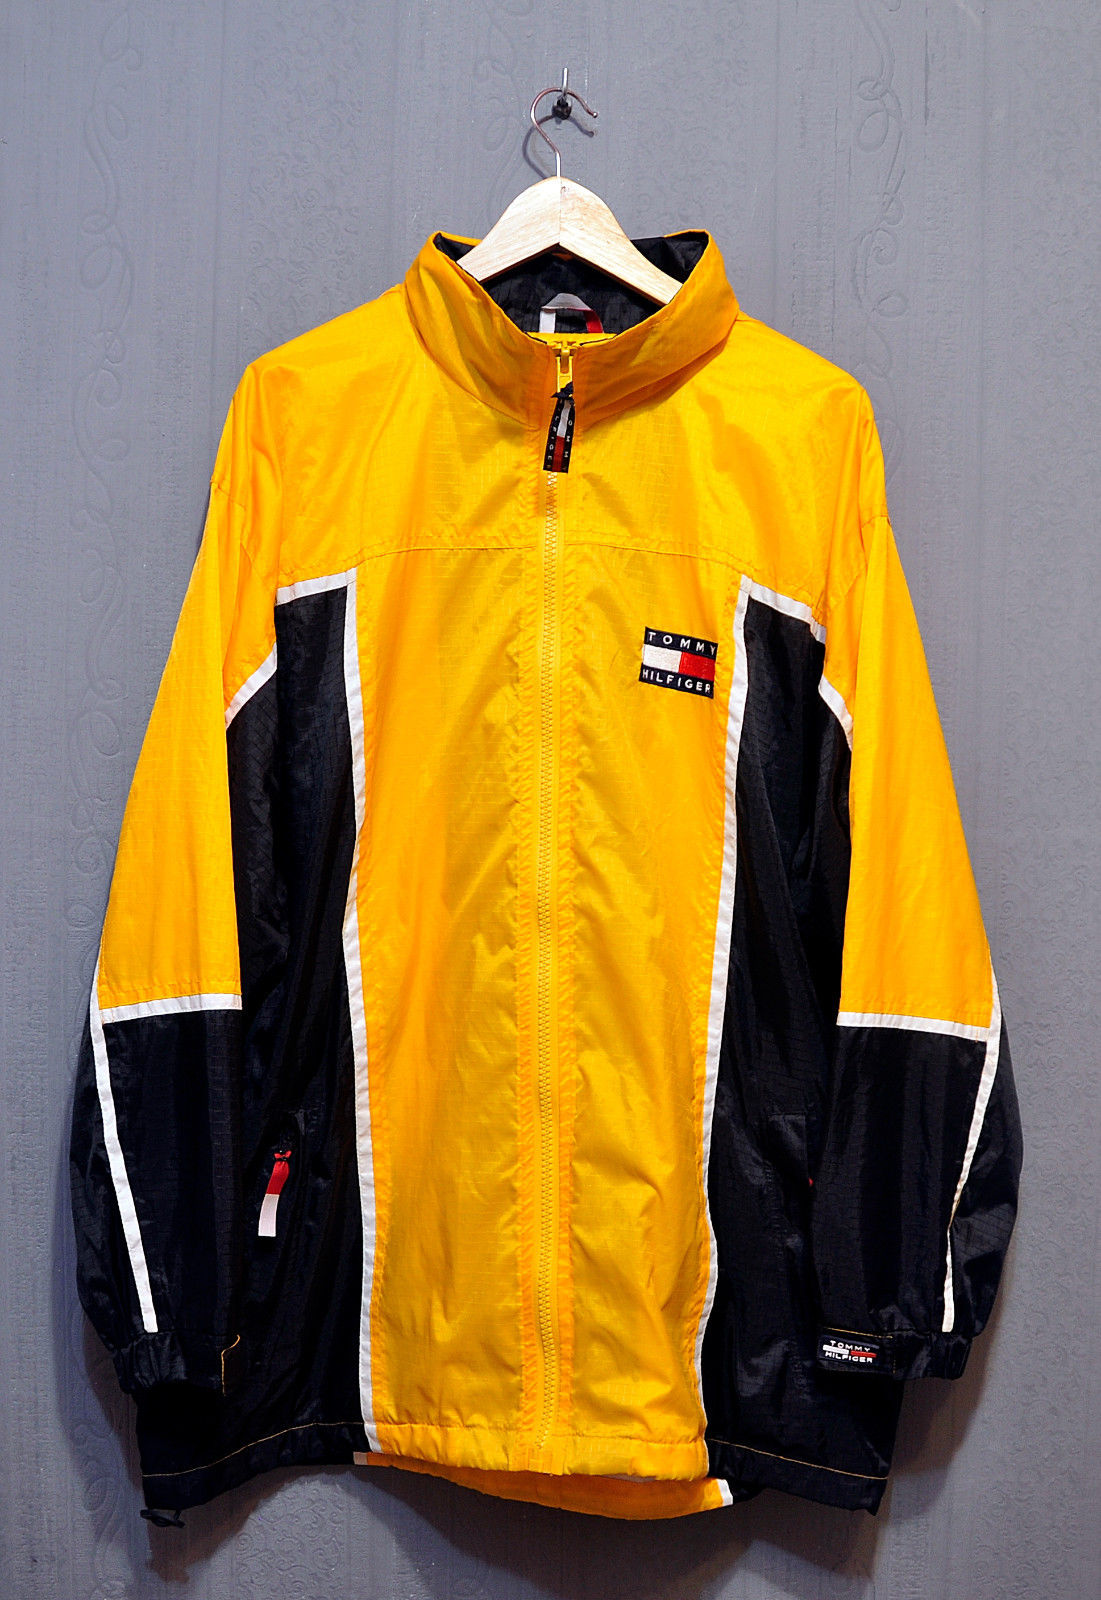 Tommy Hilfiger : 5 modèles de vestes vintages vendues sur eBay !